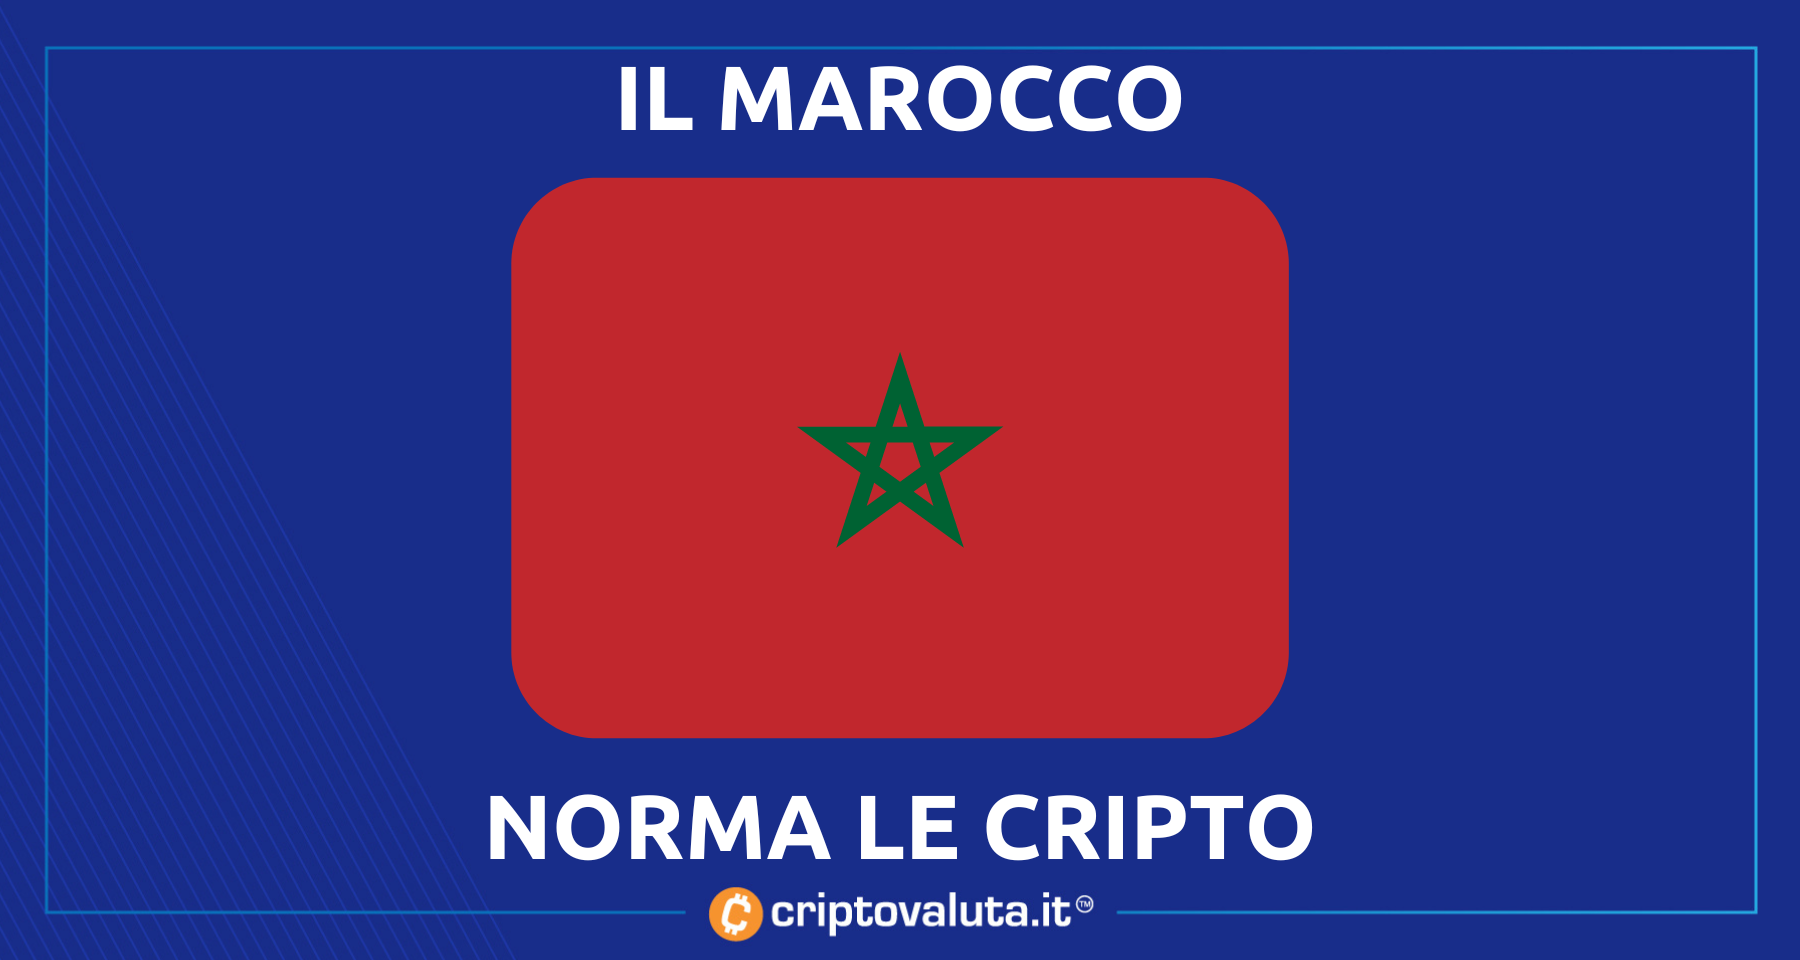 Marocco: regole sulle Crypto! | A breve il framework legale per Bitcoin